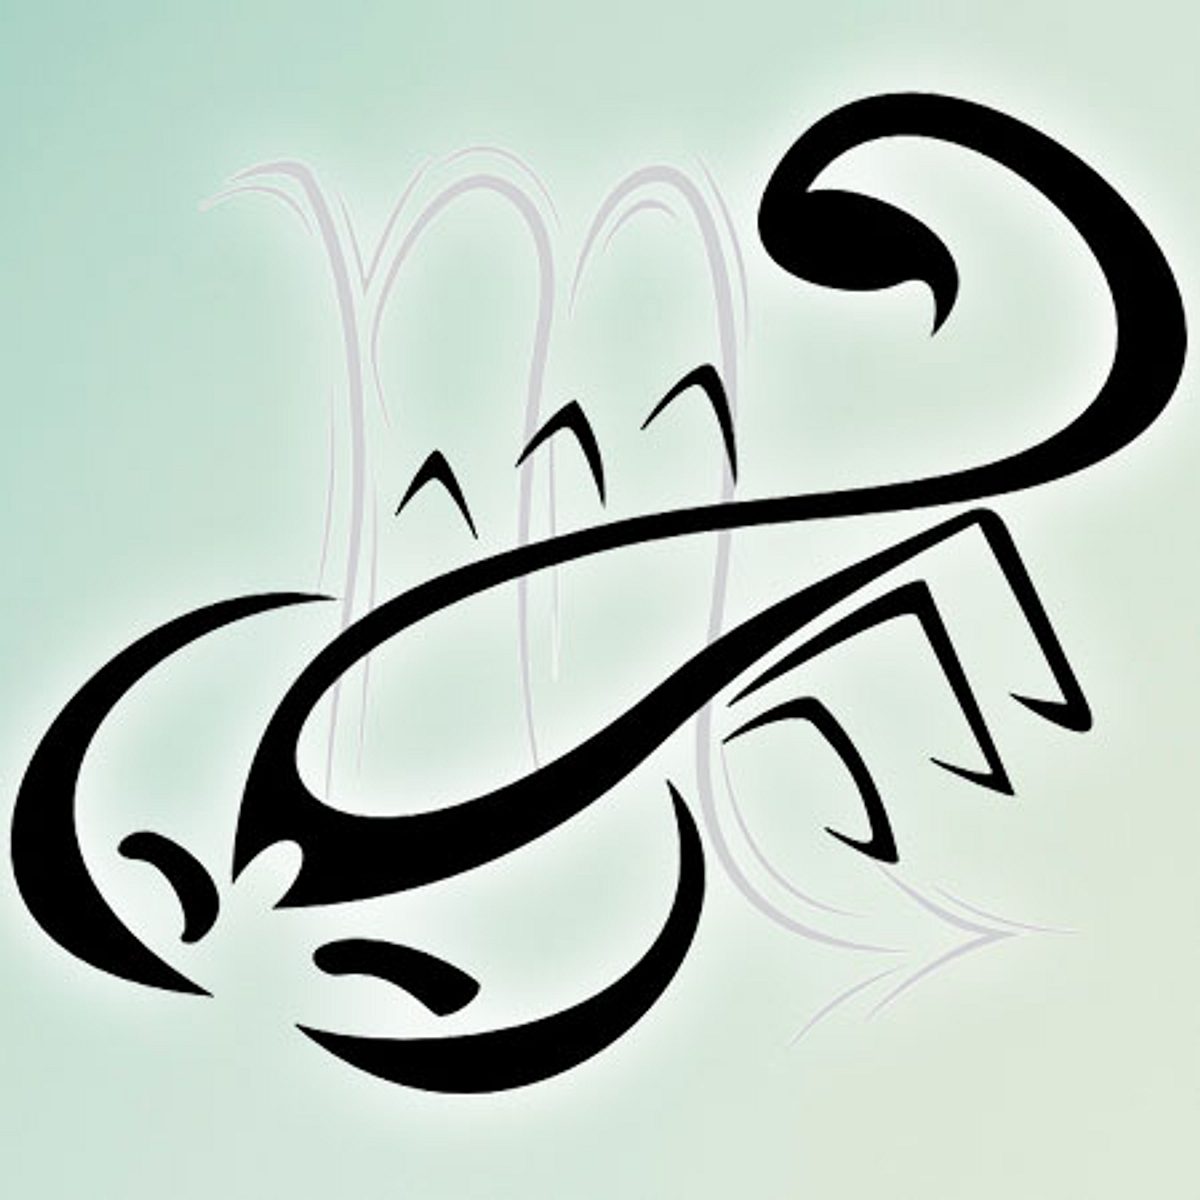 horoskop lebensfreude skorpion